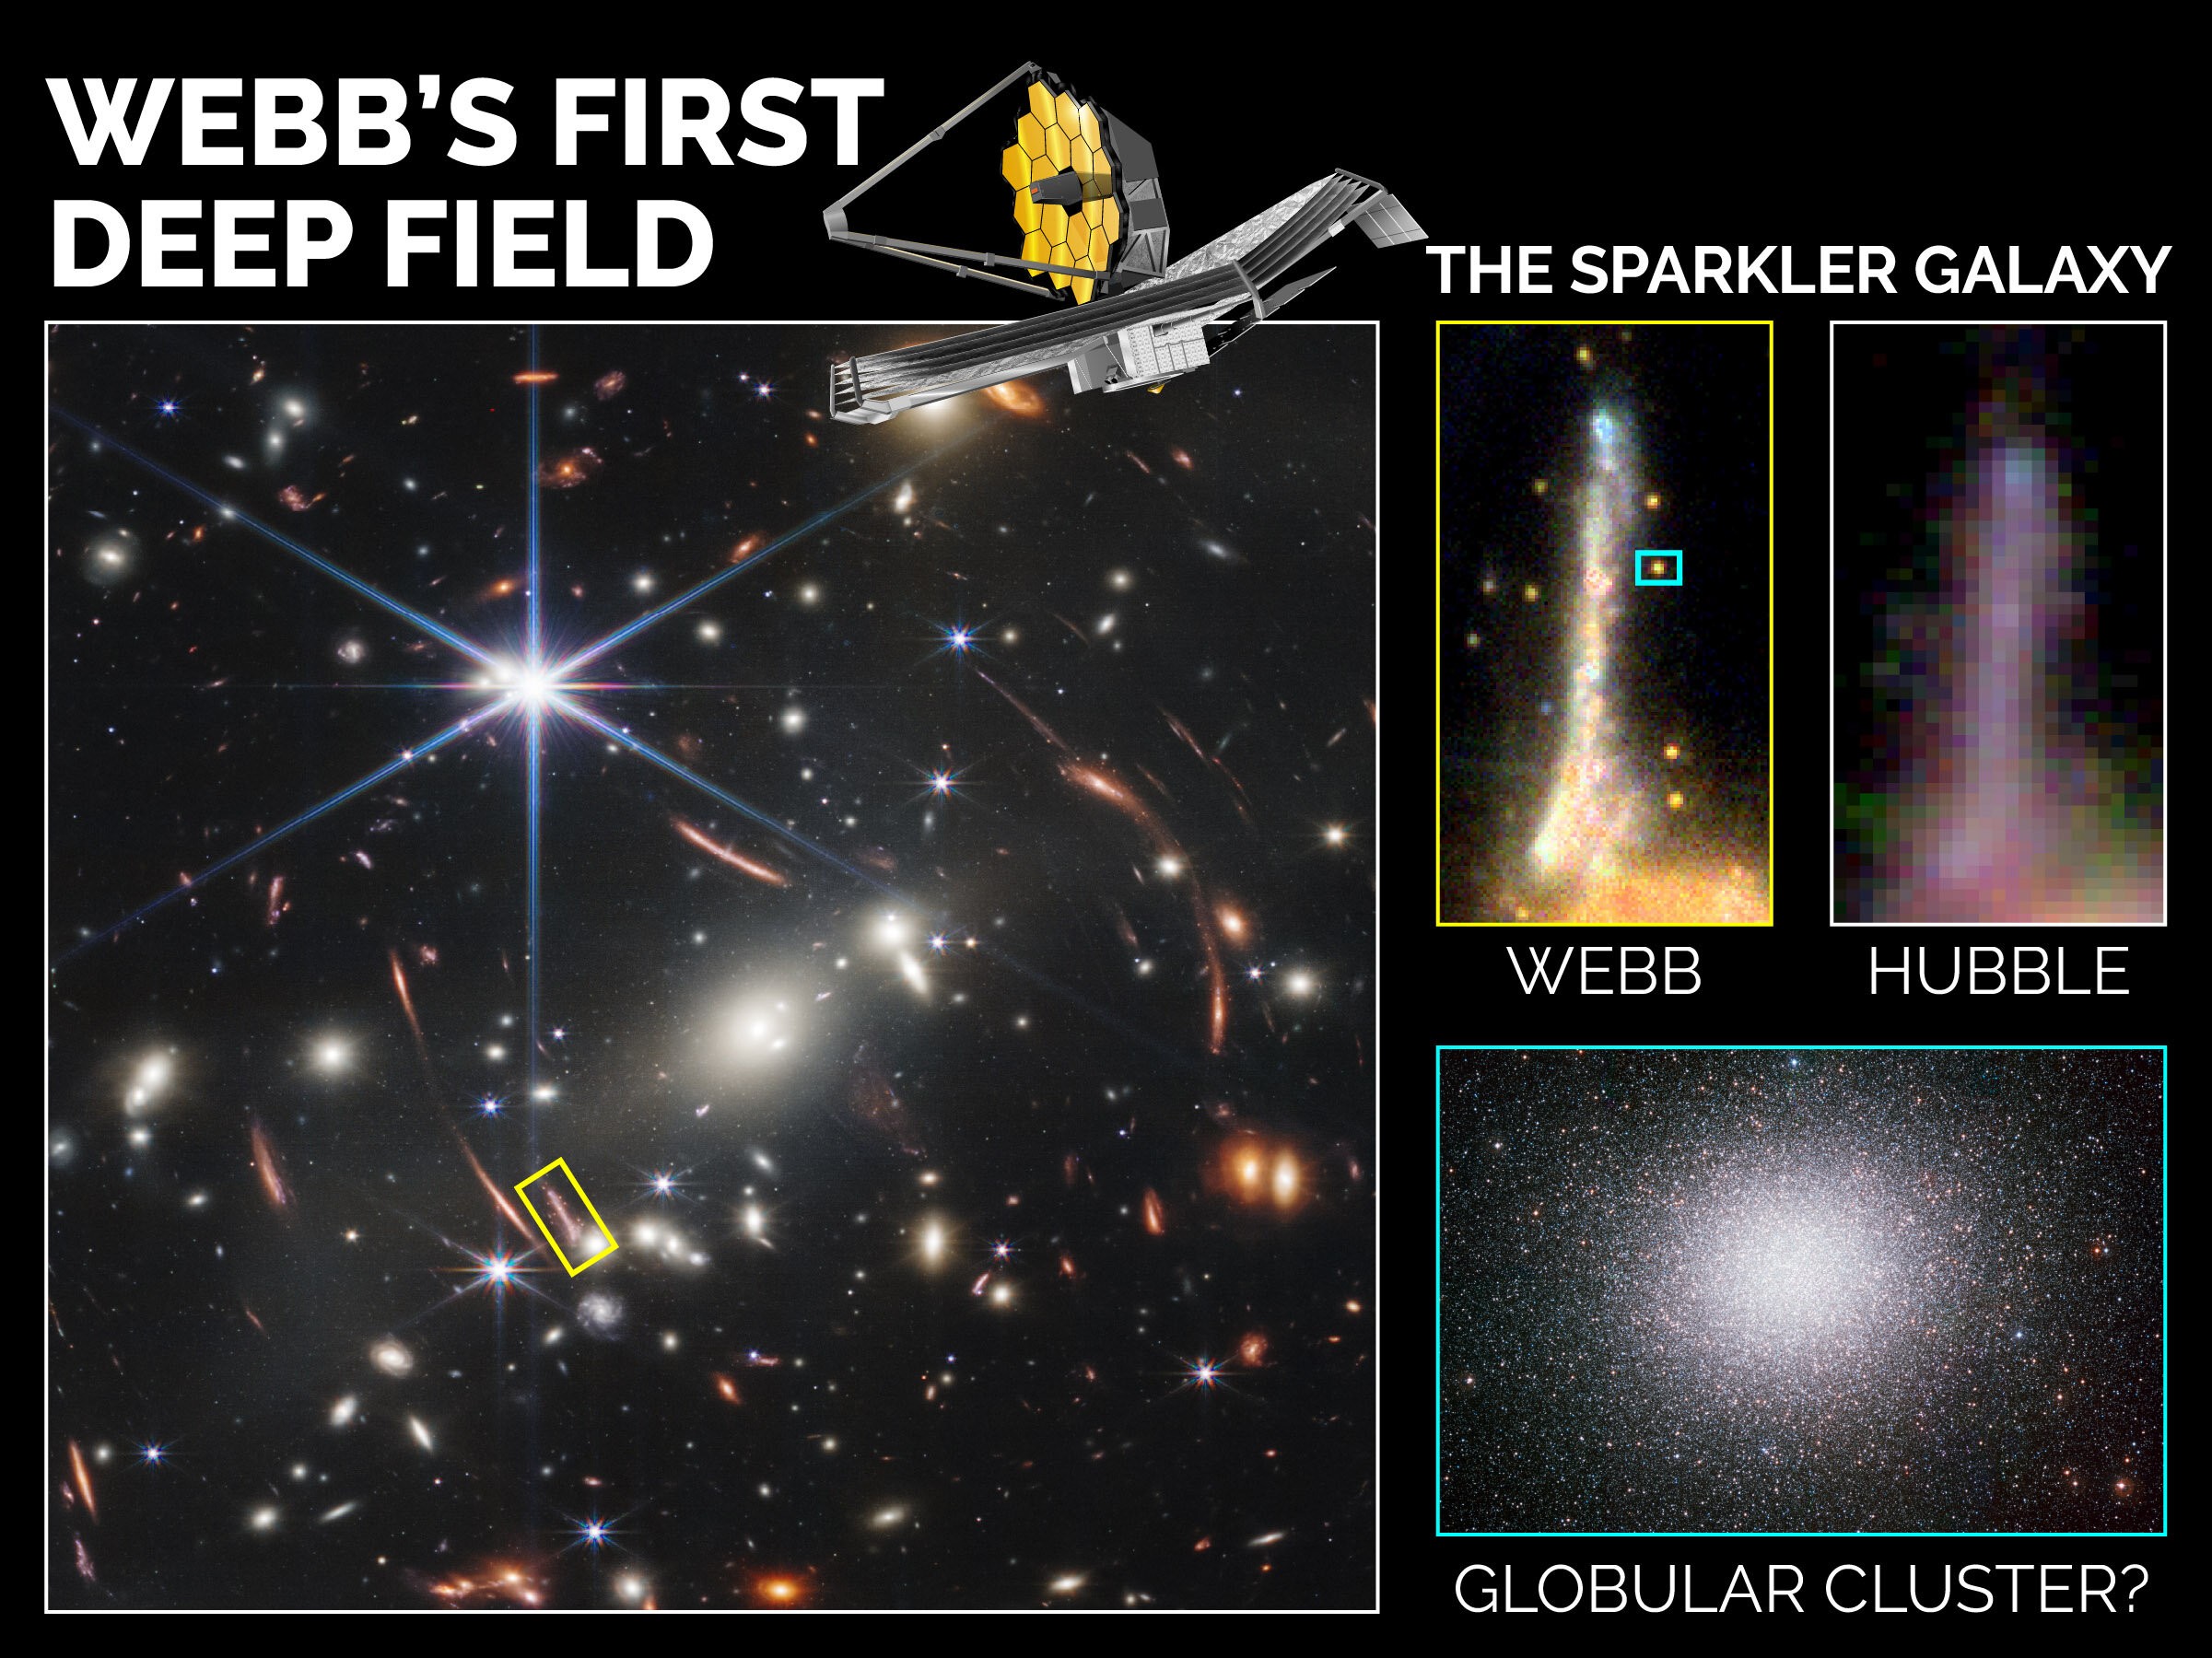 Pesquisadores estudaram galáxia Sparkler localizada no Primeiro Campo Profundo de James Webb e usaram o telescópio para determinar que cinco dos objetos brilhantes ao seu redor são aglomerados globulares (Foto: Agência Espacial Canadense, NASA, ESA, CSA, STScI; Mowla, Iyer et ai. 2022)